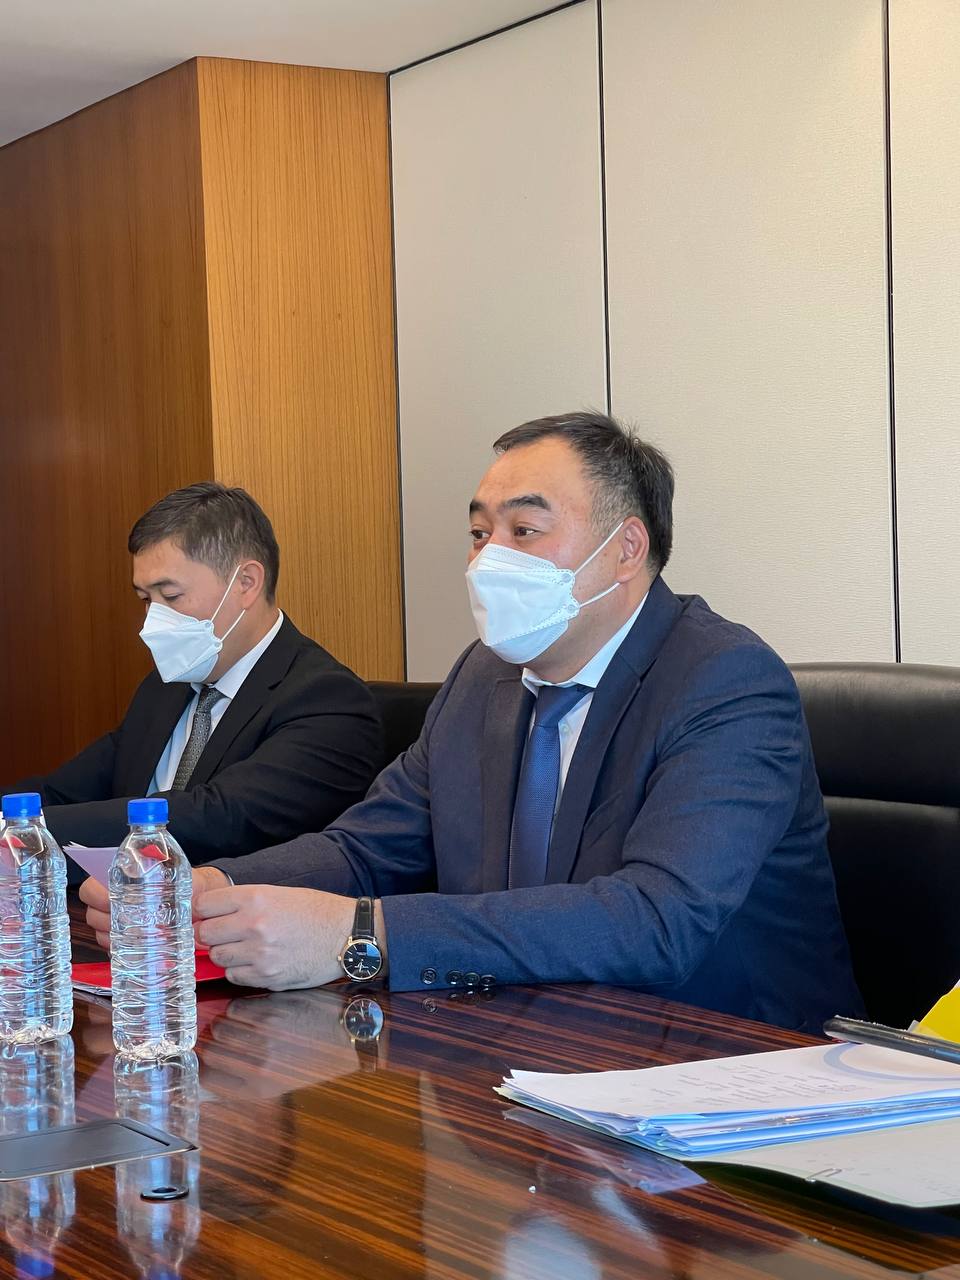 ИИМ. Улан Ниязбеков Чехиянын Ички иштер министрлигинин жетекчиси Ян Свейдер менен эки тараптуу кызматташуу тууралуу сүйлөшүүлөрдү өткөрдү